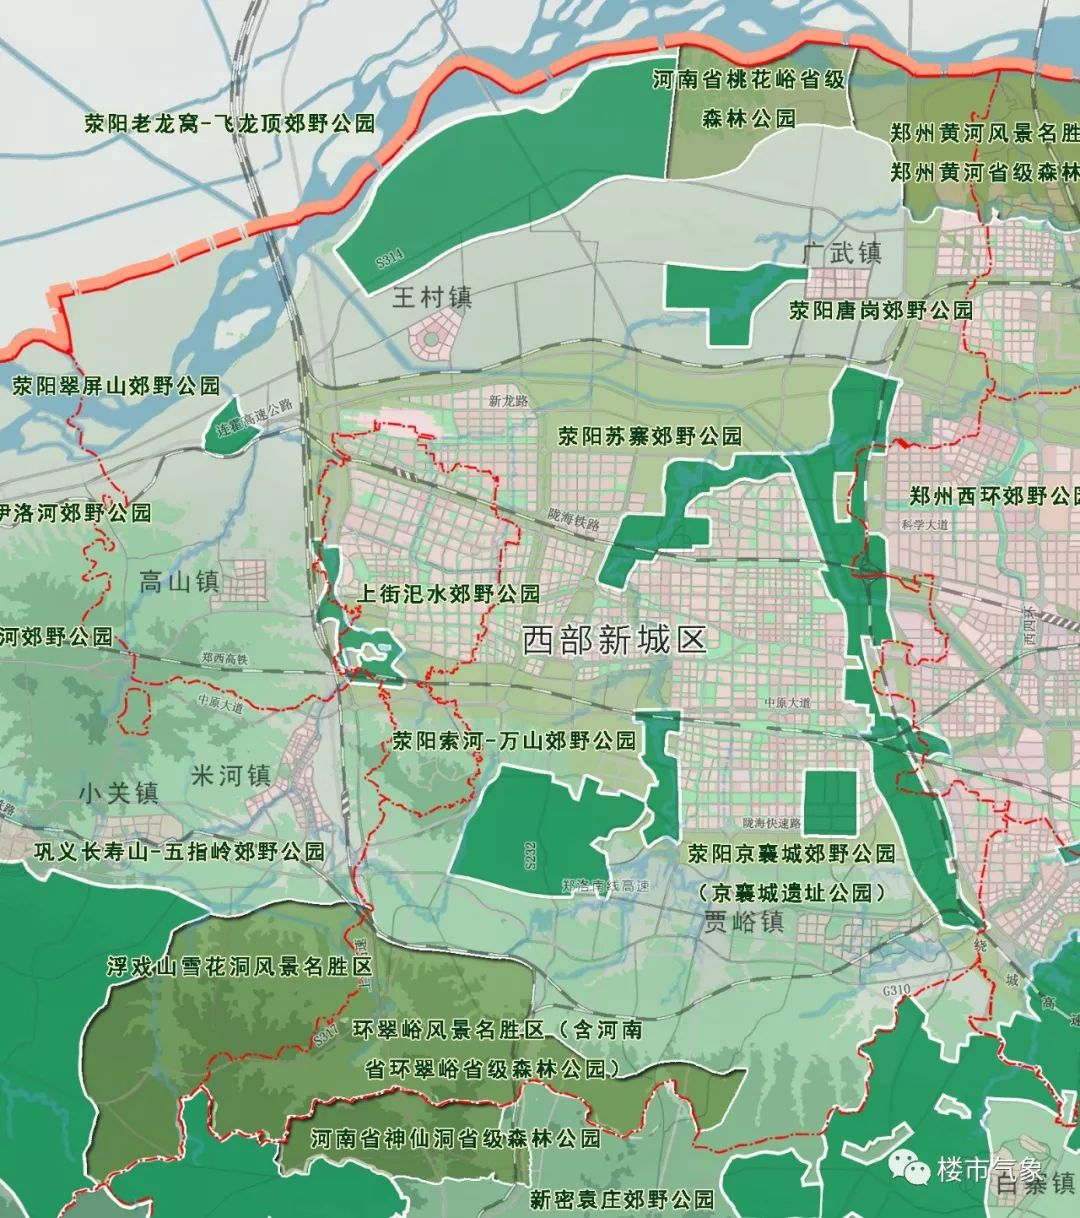 郑州市43个郊野公园规划获批郑州野生动物园第二植物园常西湖荥阳索河